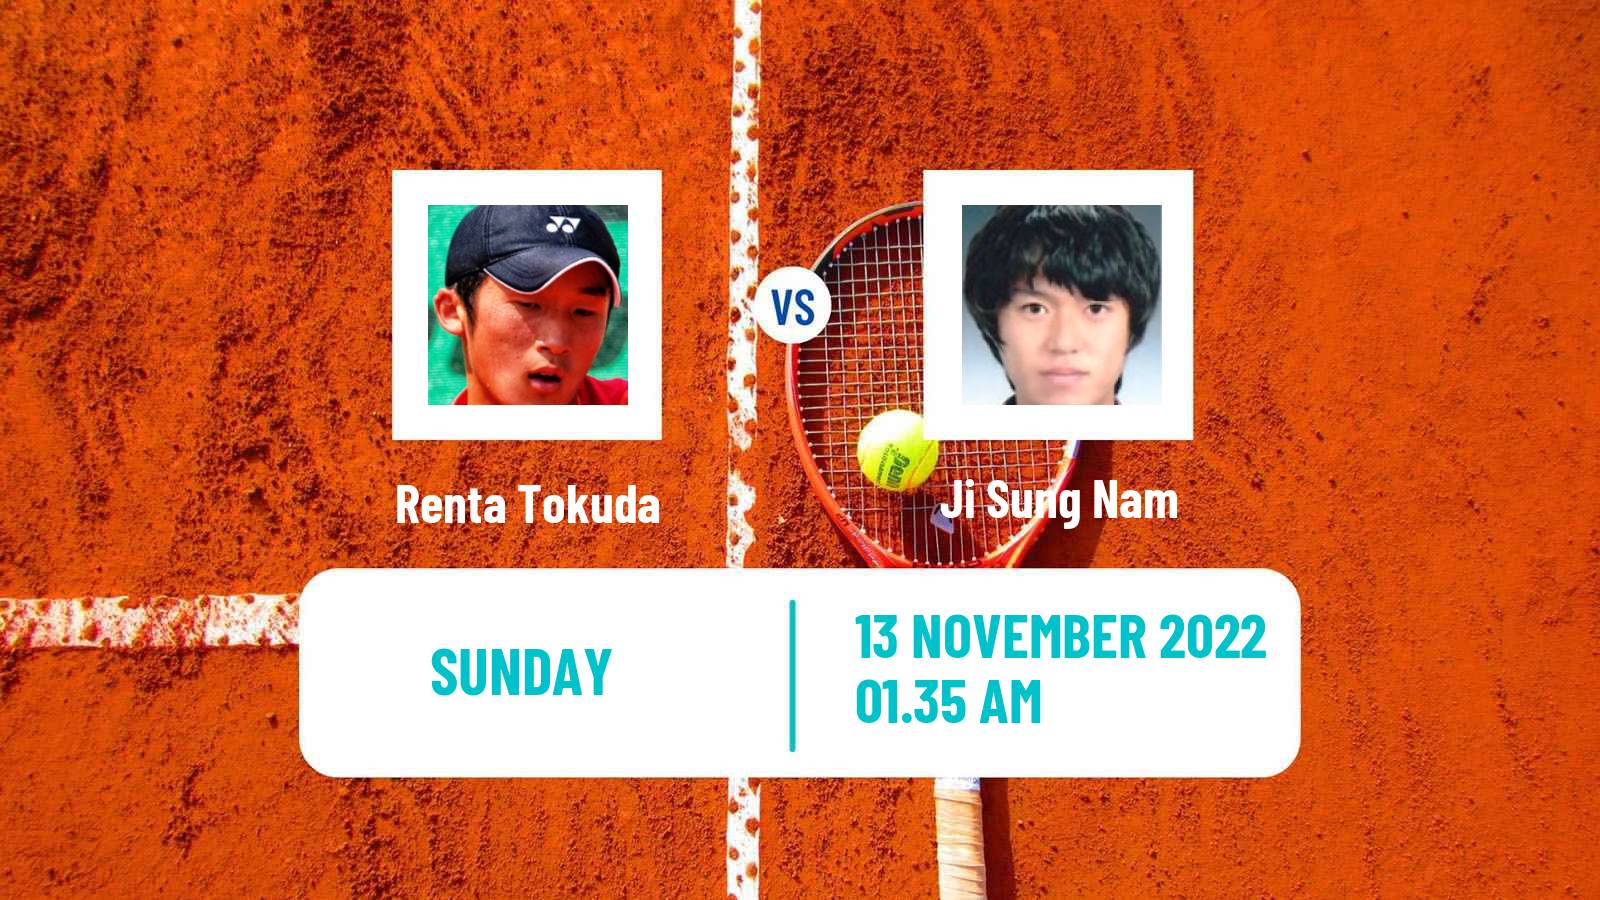 Tennis ATP Challenger Renta Tokuda - Ji Sung Nam